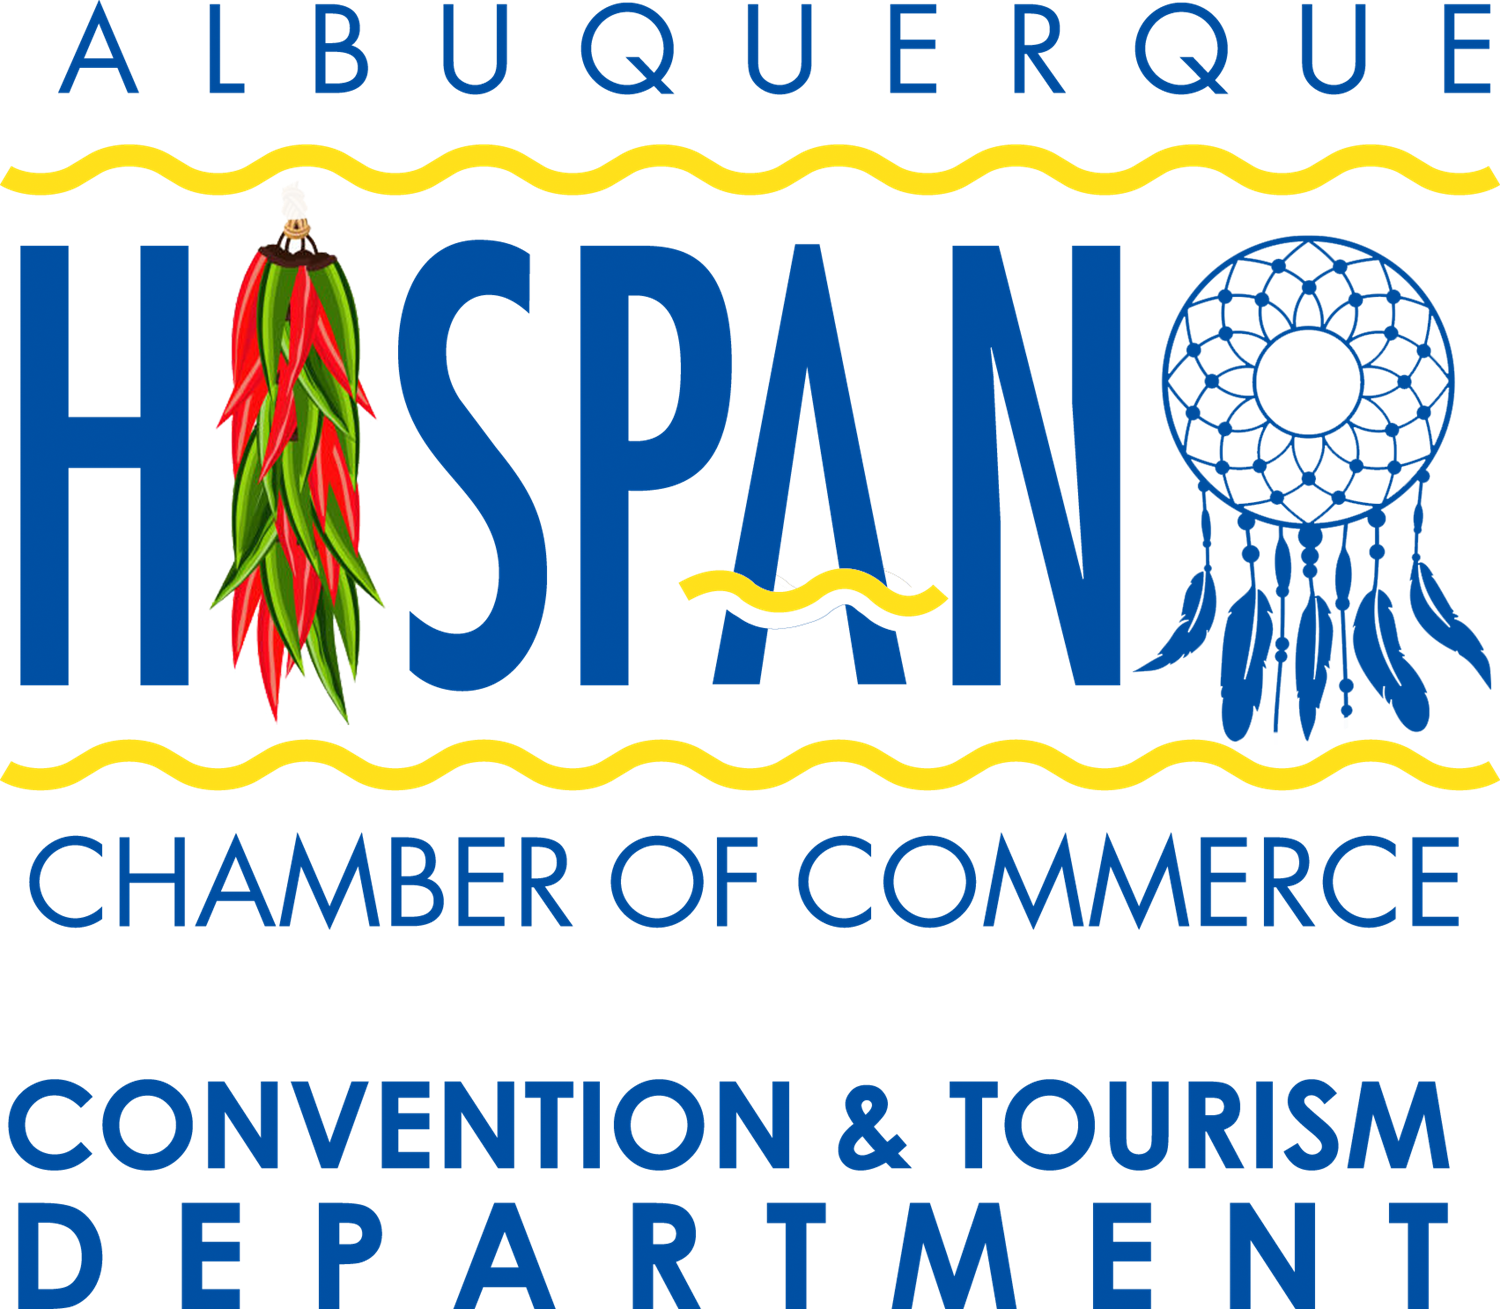 Logo für die Kongress- und Tourismusabteilung der Handelskammer von Albuquerque Hispano